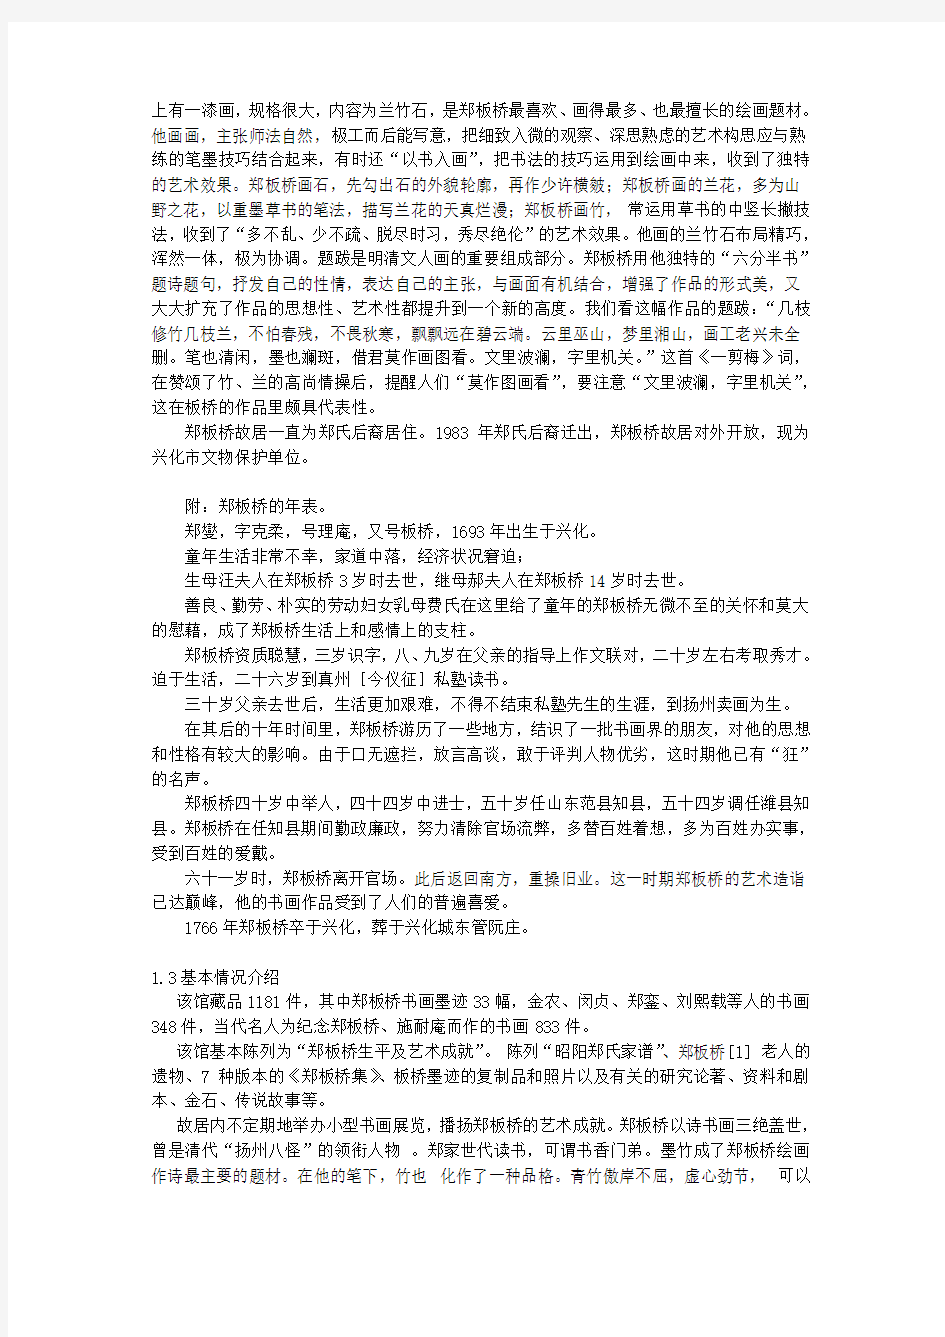 关于江苏省兴化市郑板桥故居的保护与发展的调查报告